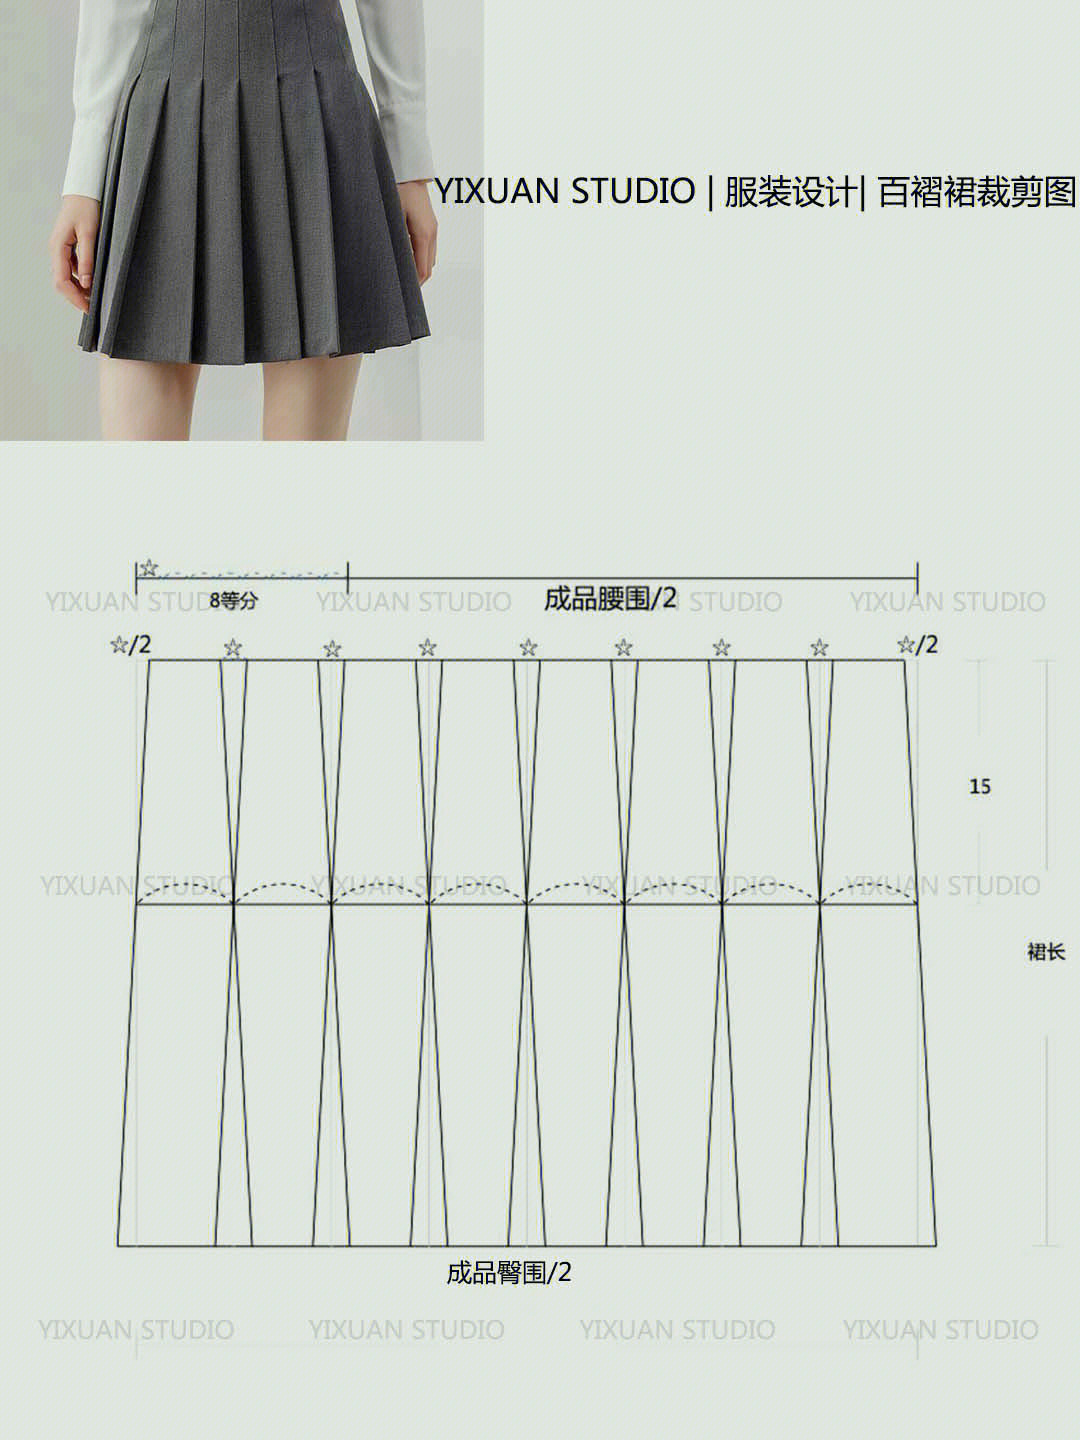 百折裙怎么做图片